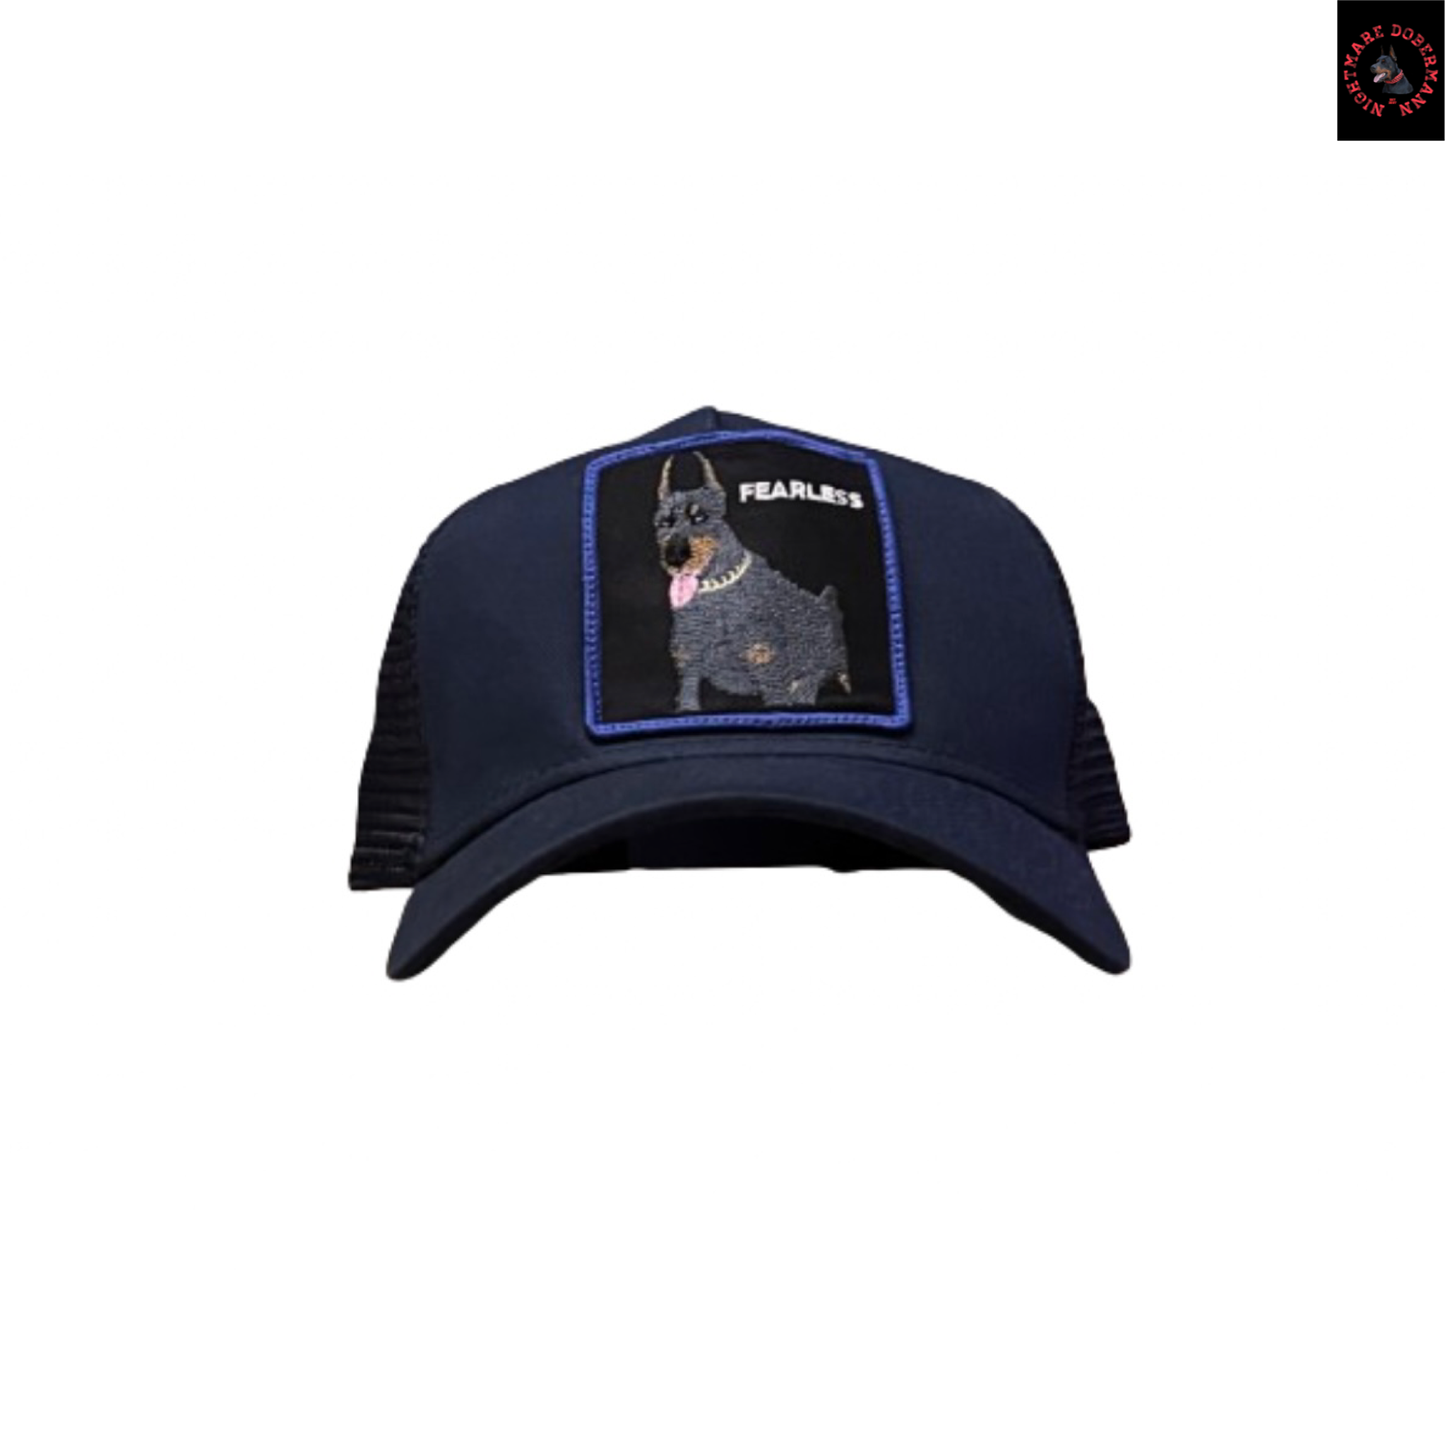 Venom Version “Fearless” Blue Trucker Hat